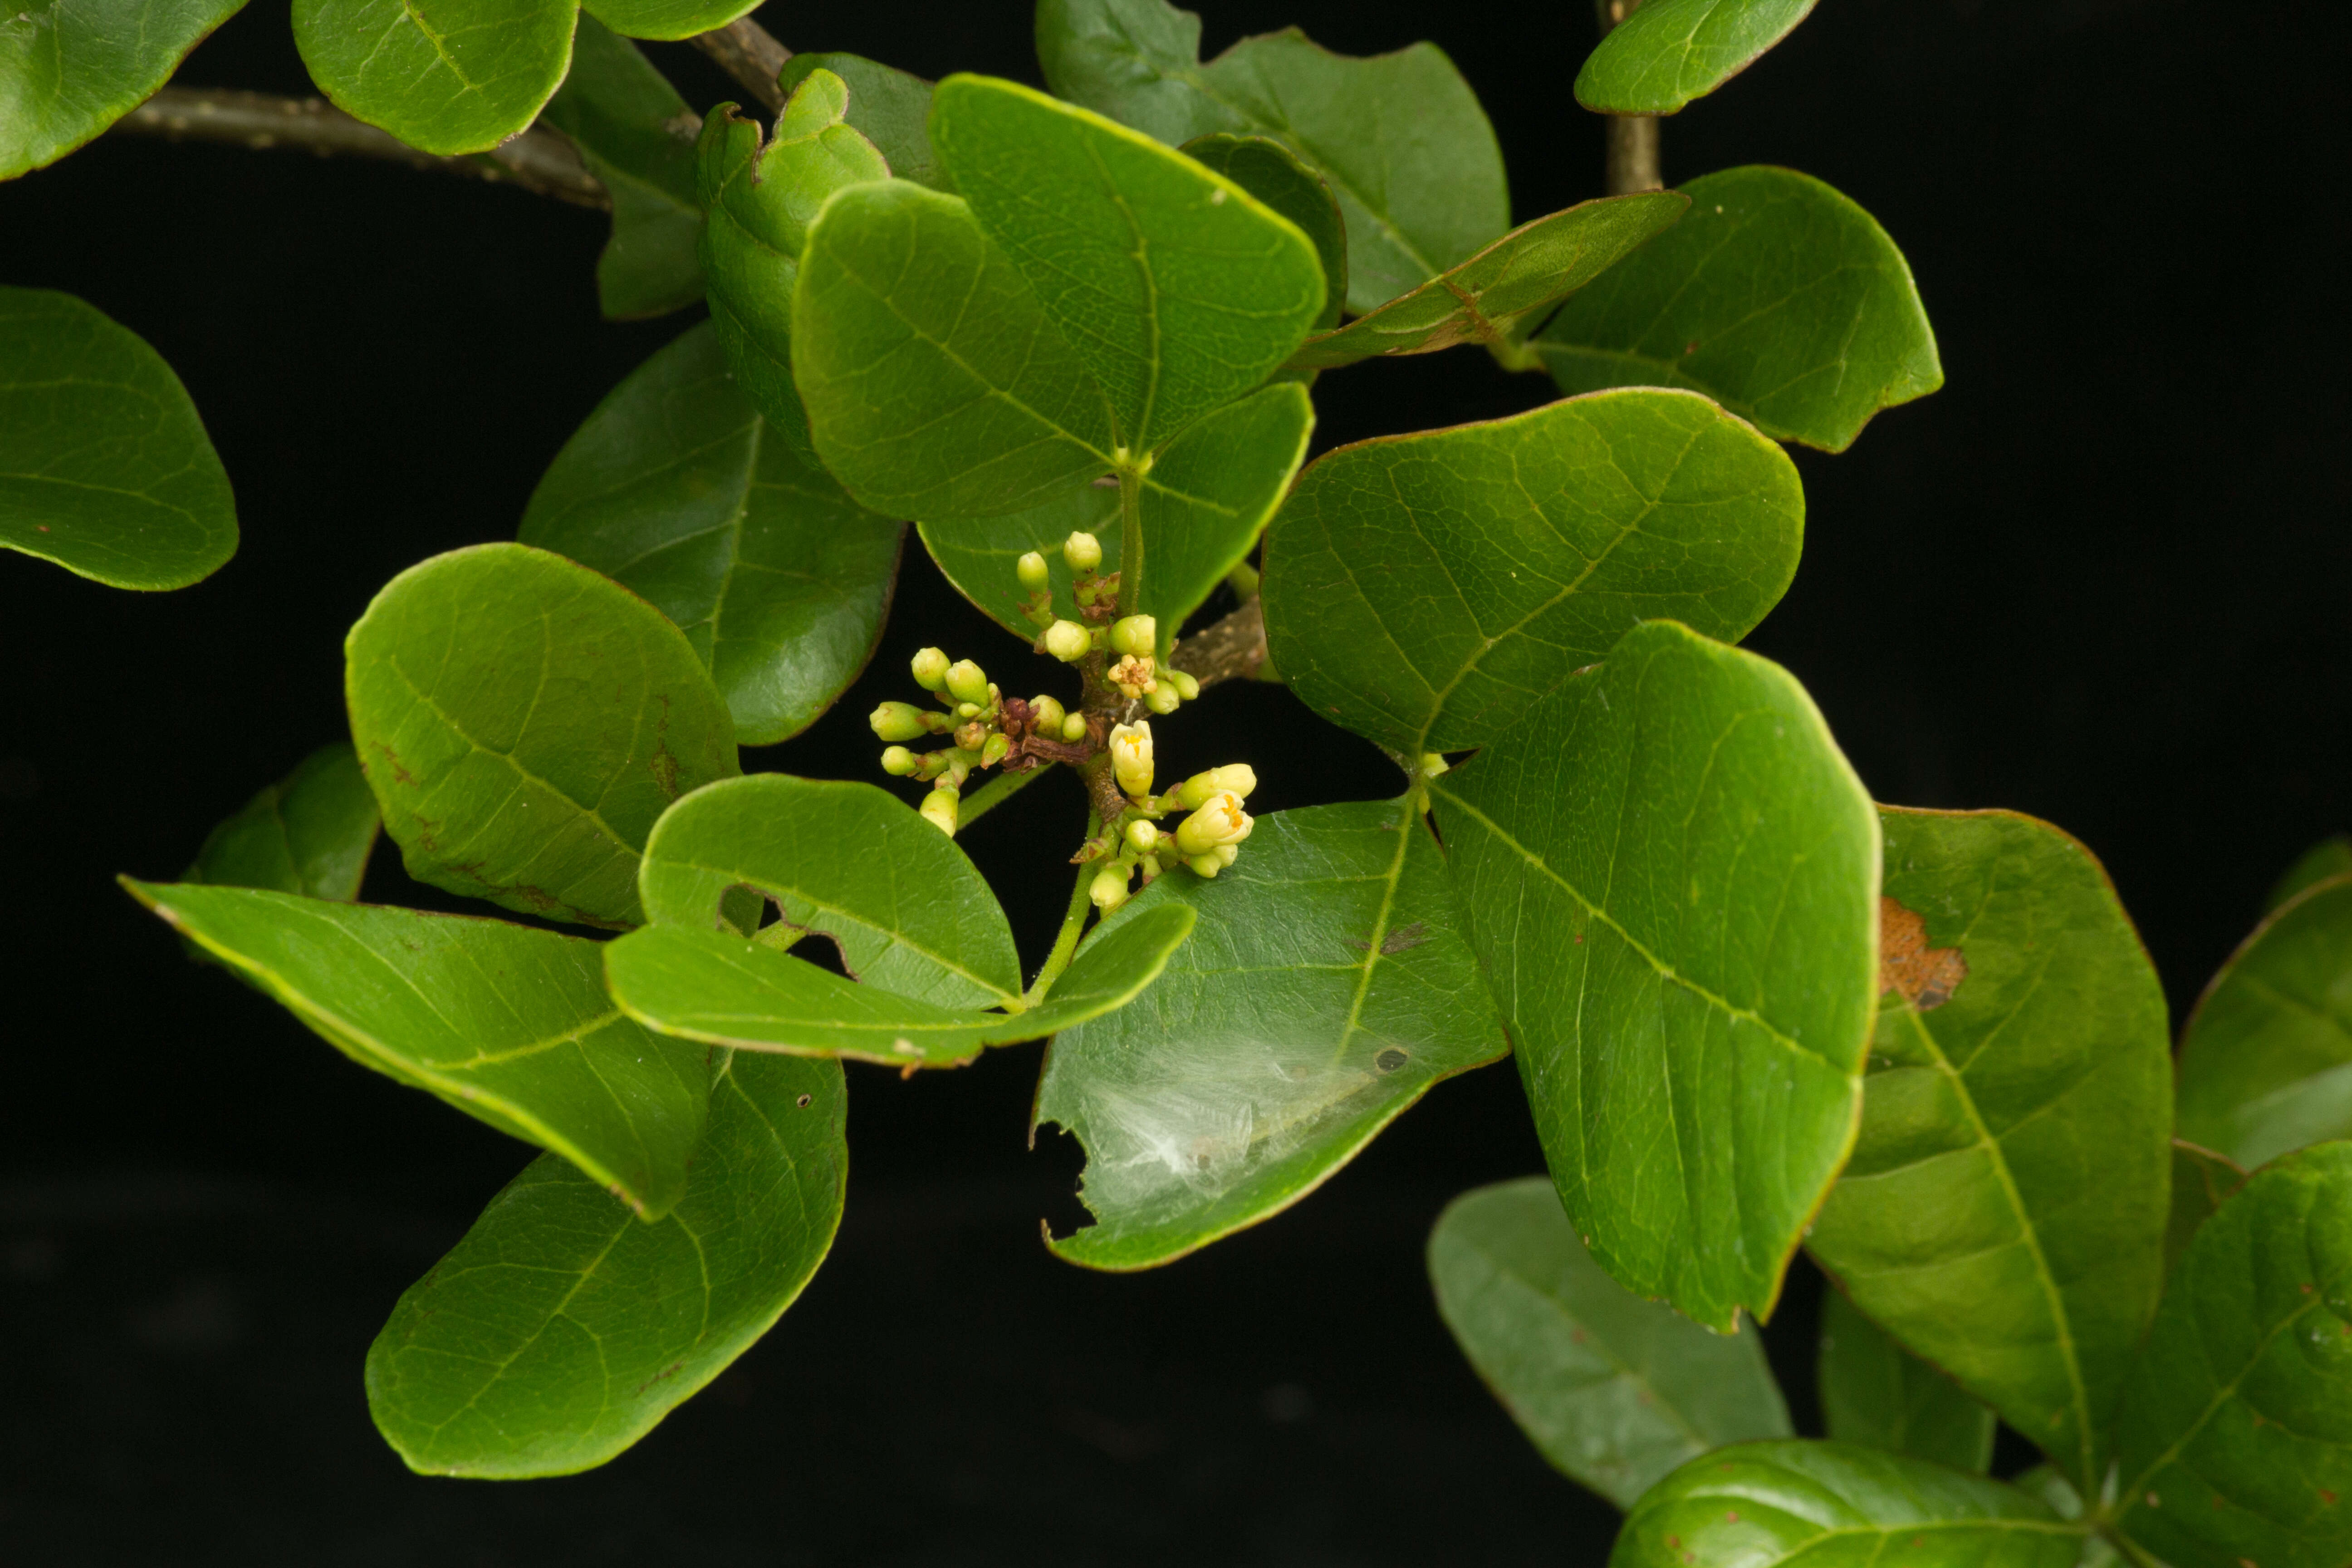 Image of Trichilia trifolia L.